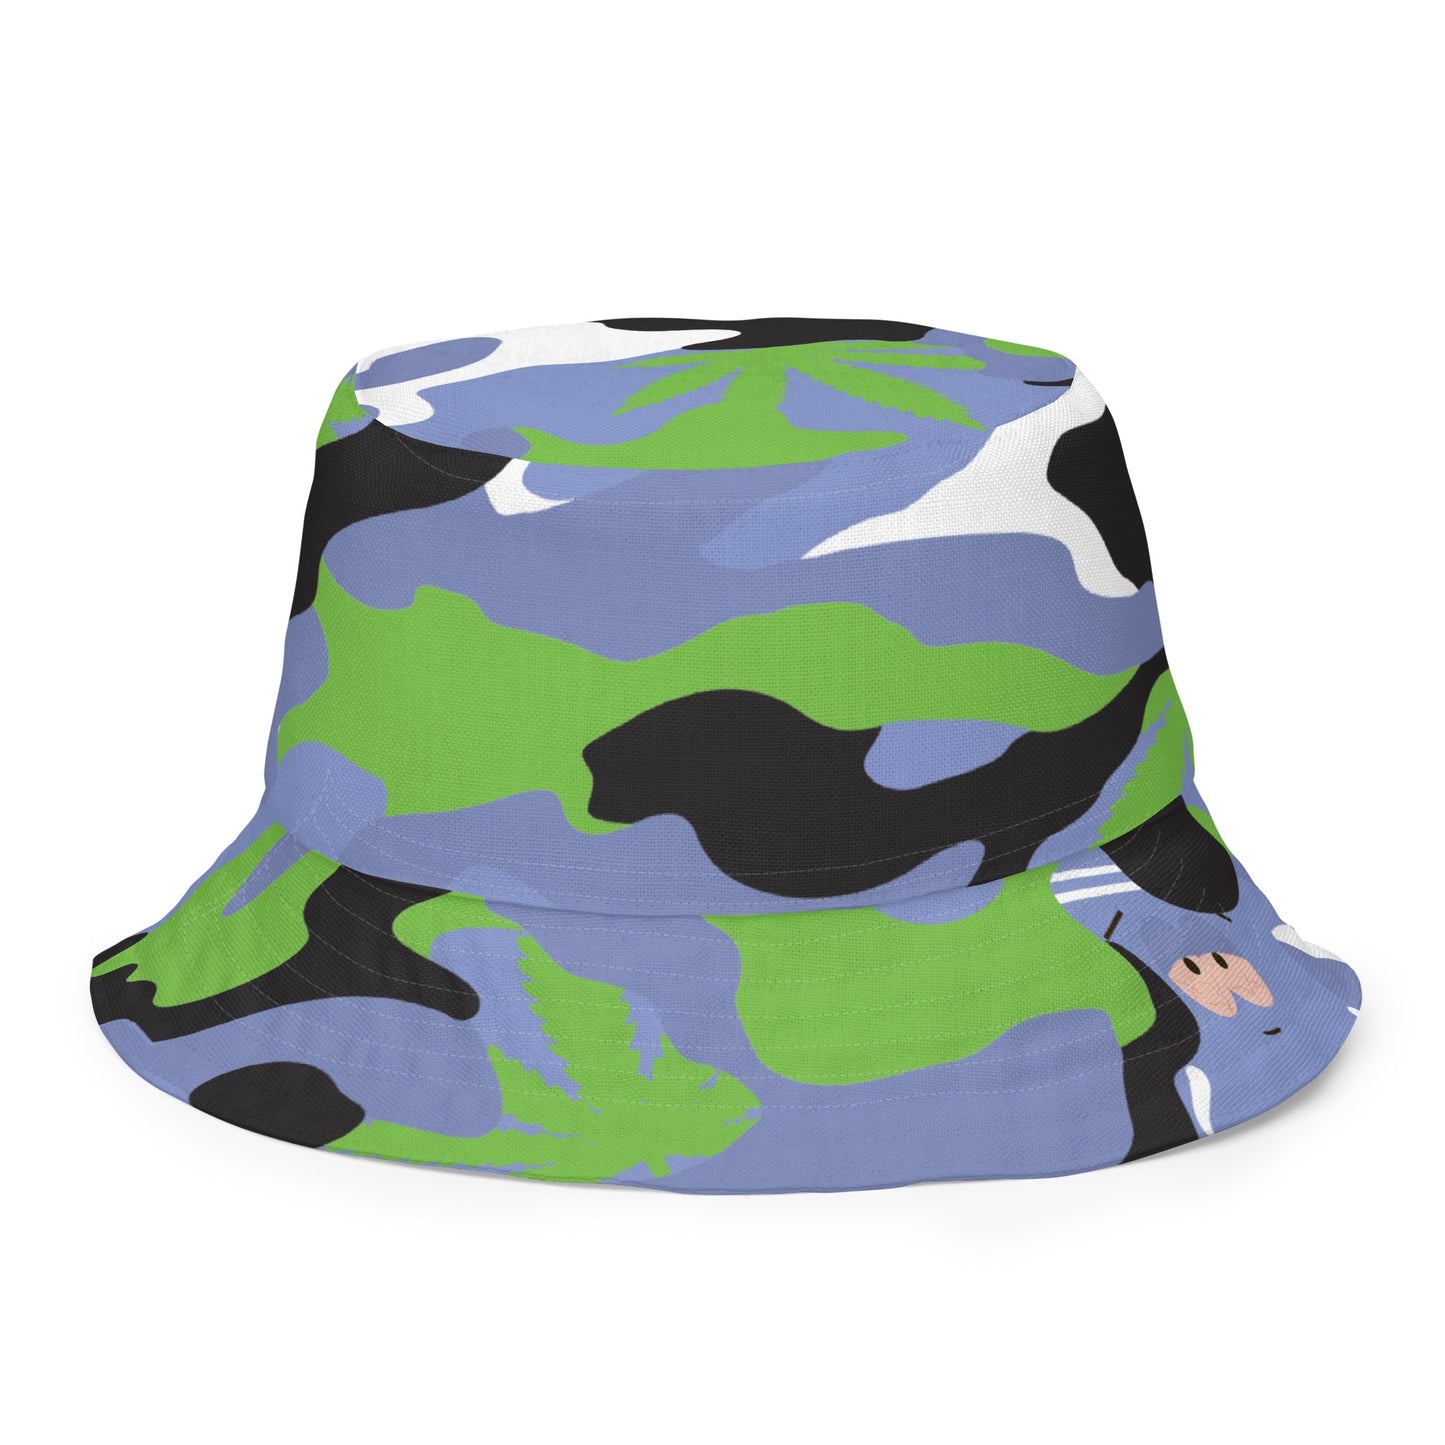 South Park Towelie 4/20 Camo Reversible Bucket Hat